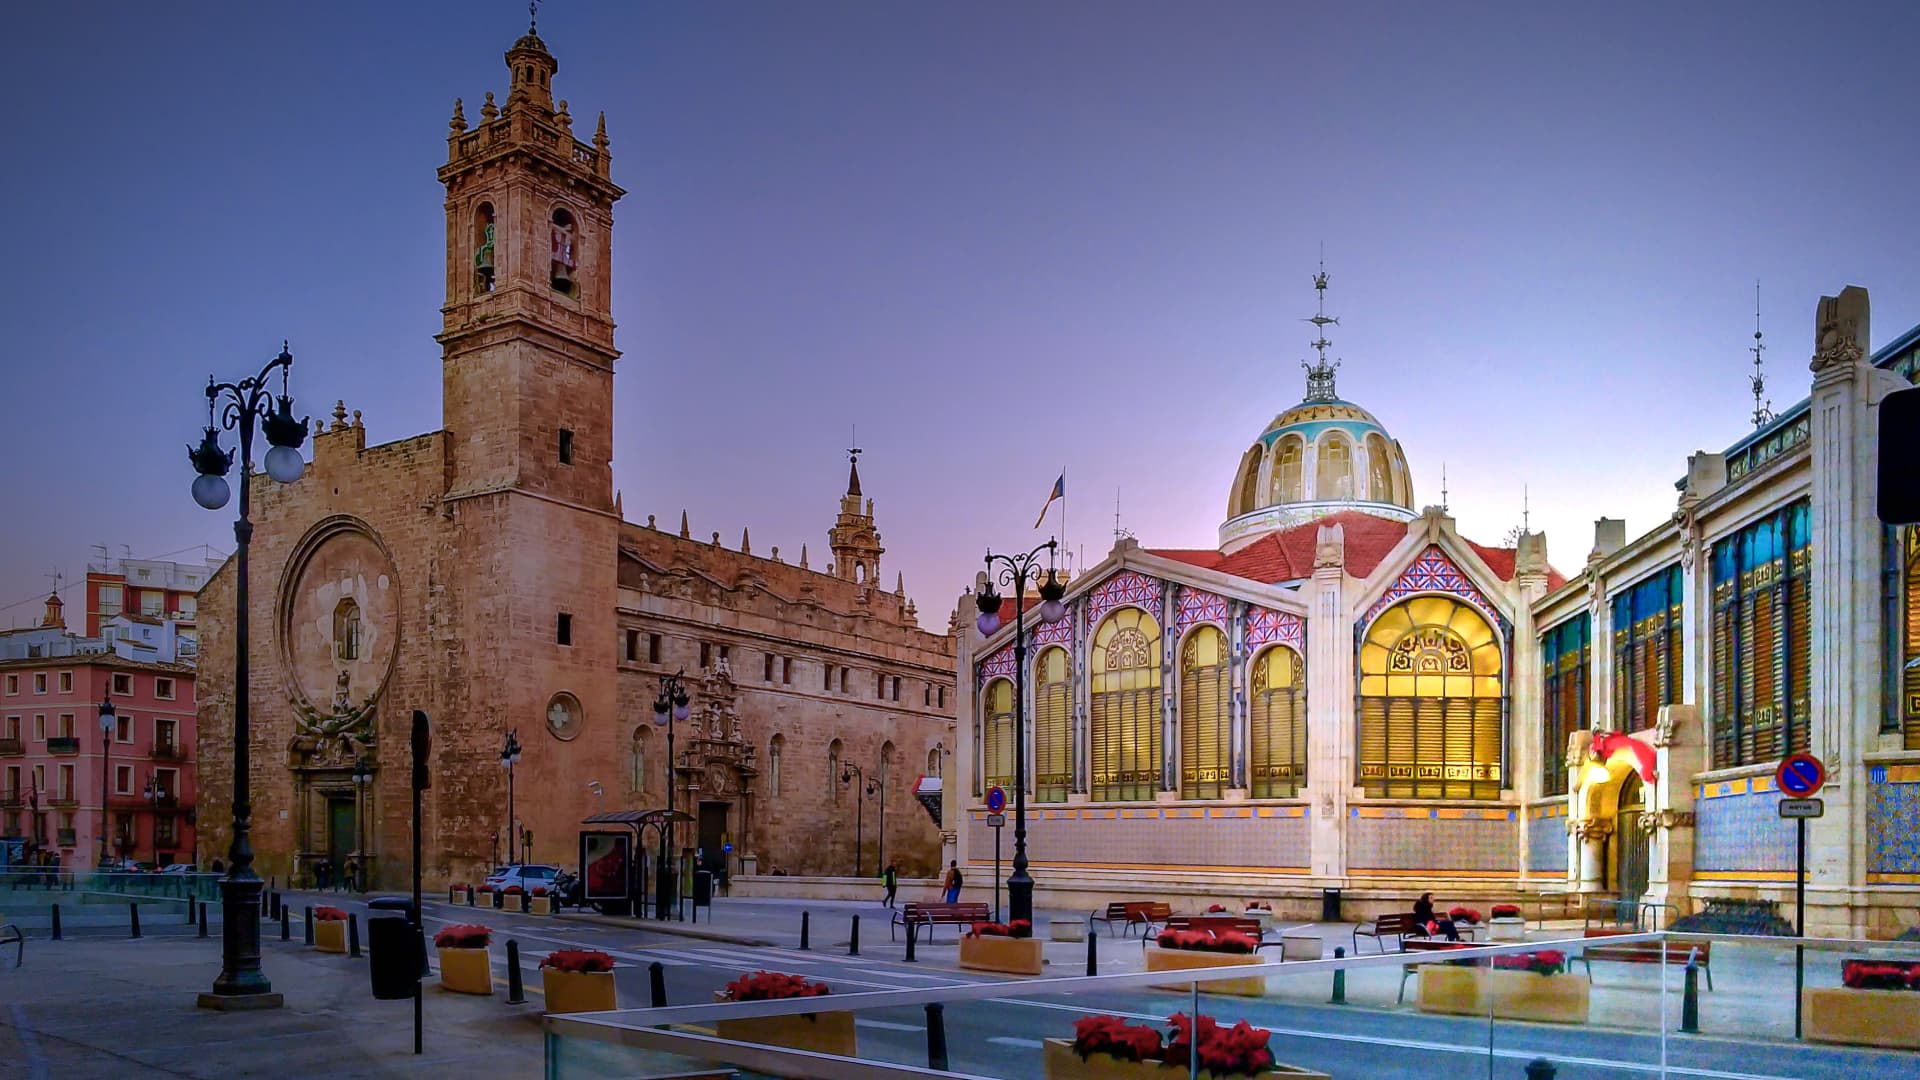 Iglesia de los Santos Juanes and the Central Market of Valencia.